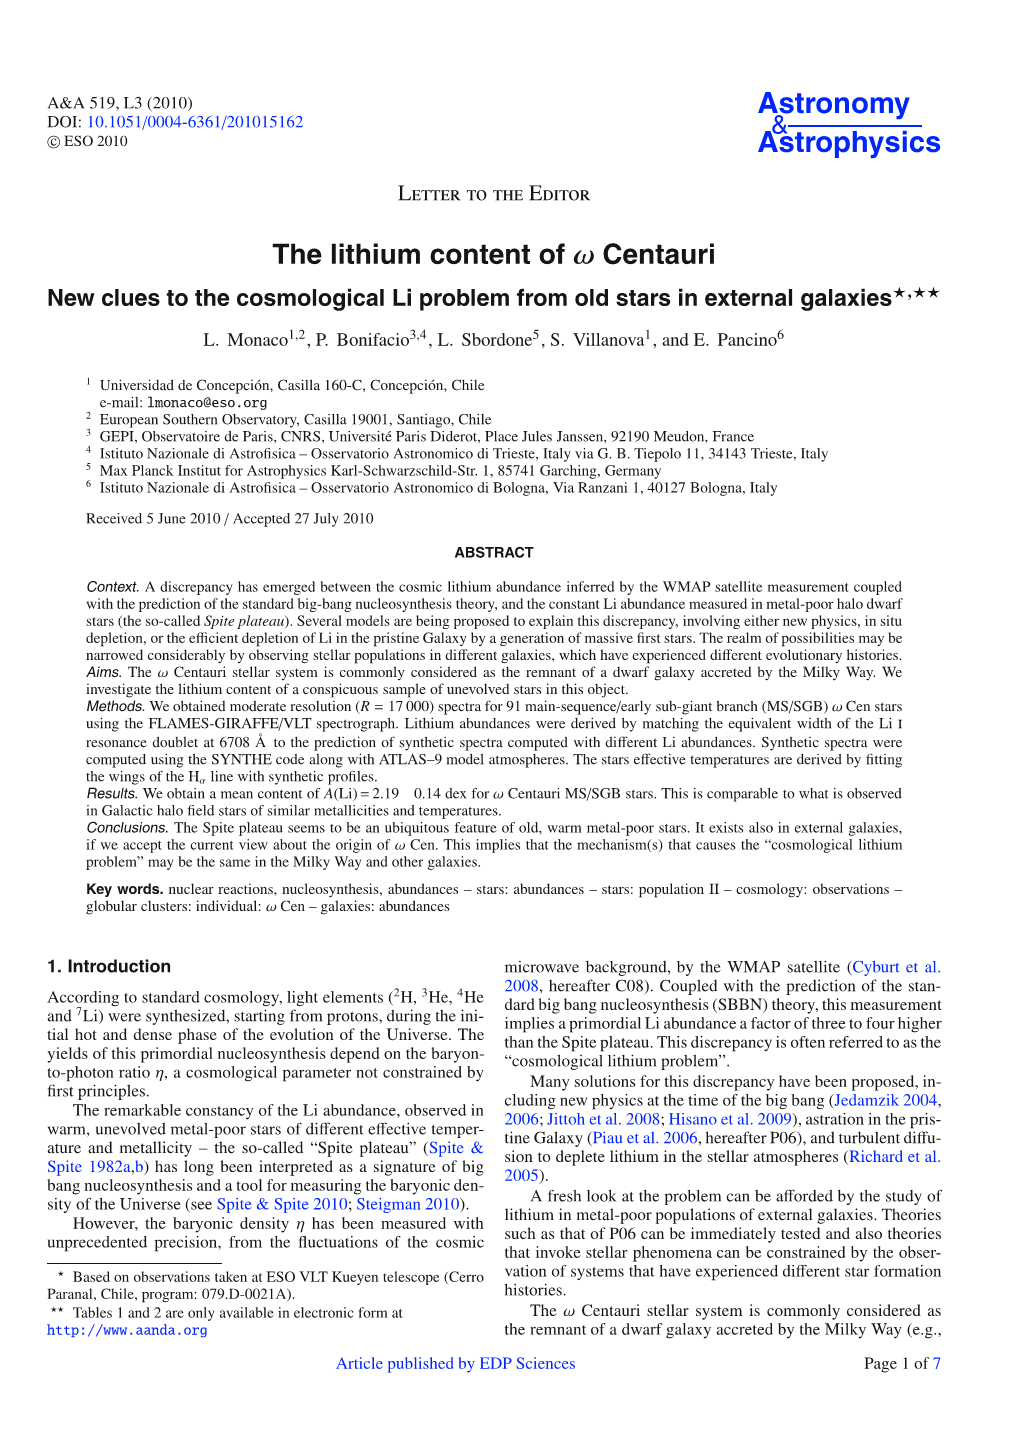 The Lithium Content of Ω Centauri***